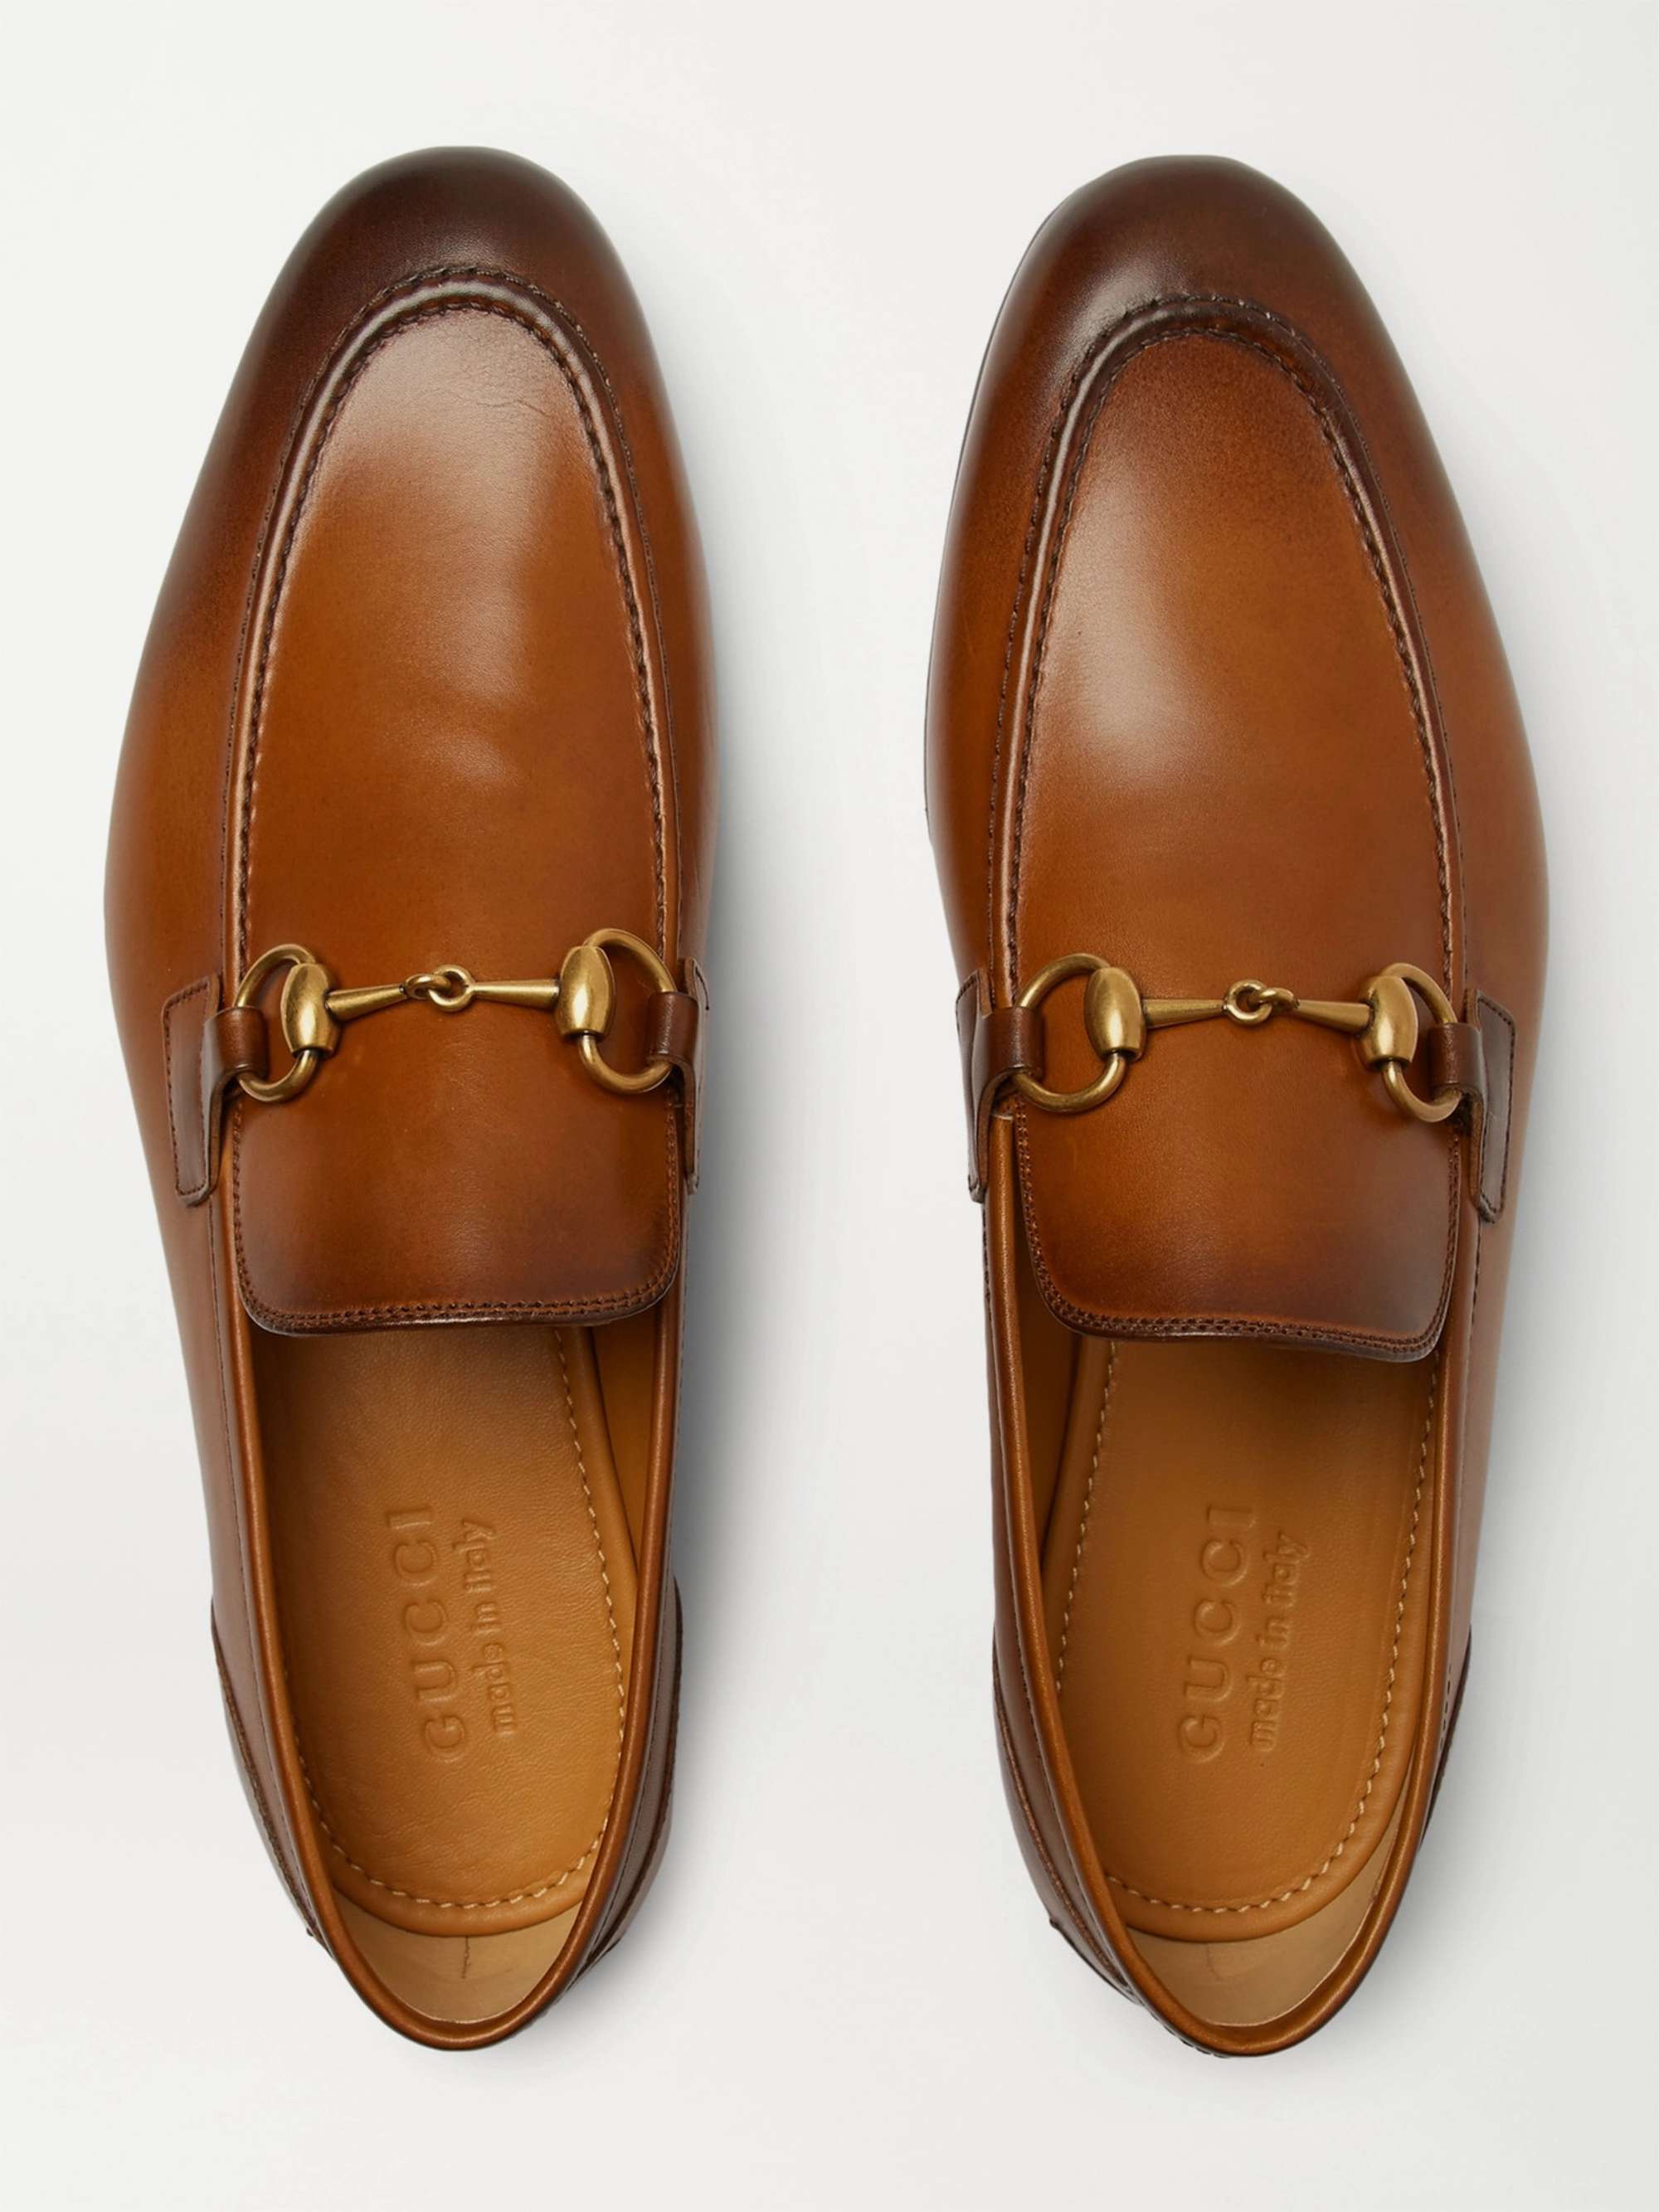 GUCCI Jordaan Horsebit Burnished-Leather Loafers | MR PORTER